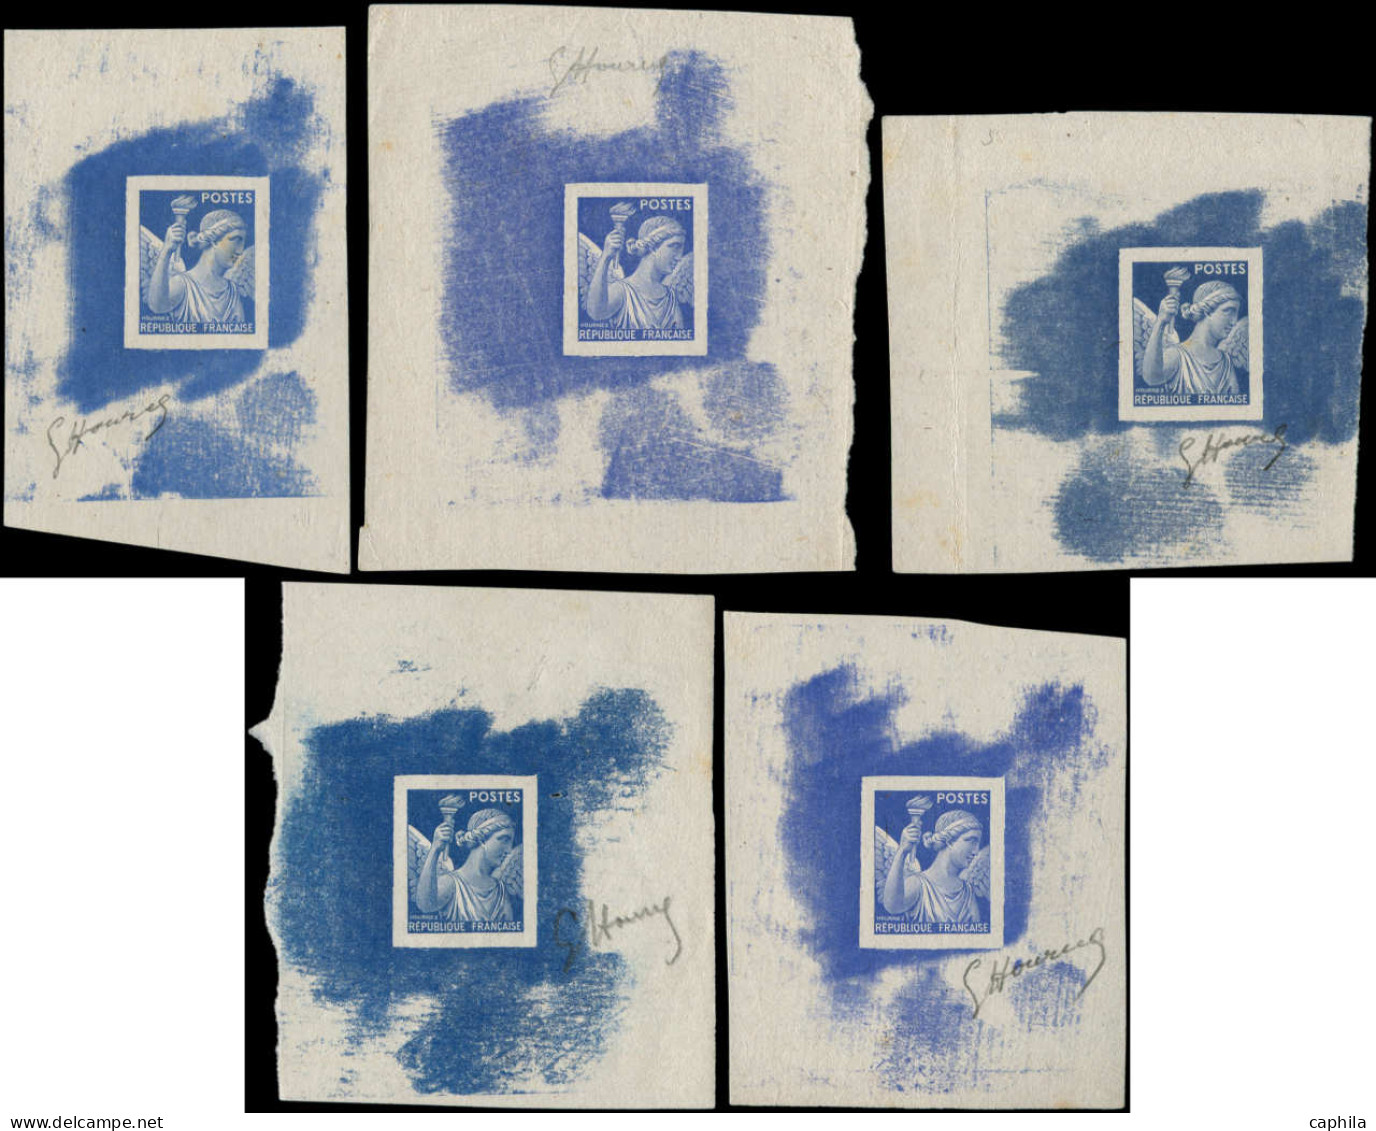 FRANCE Epreuves D'Artiste EPA - (431), Gravure Fine, Série De 5 épreuves Du Poinçon Sans Faciale Dans 5 Teintes De Bleu  - Prueba De Artistas